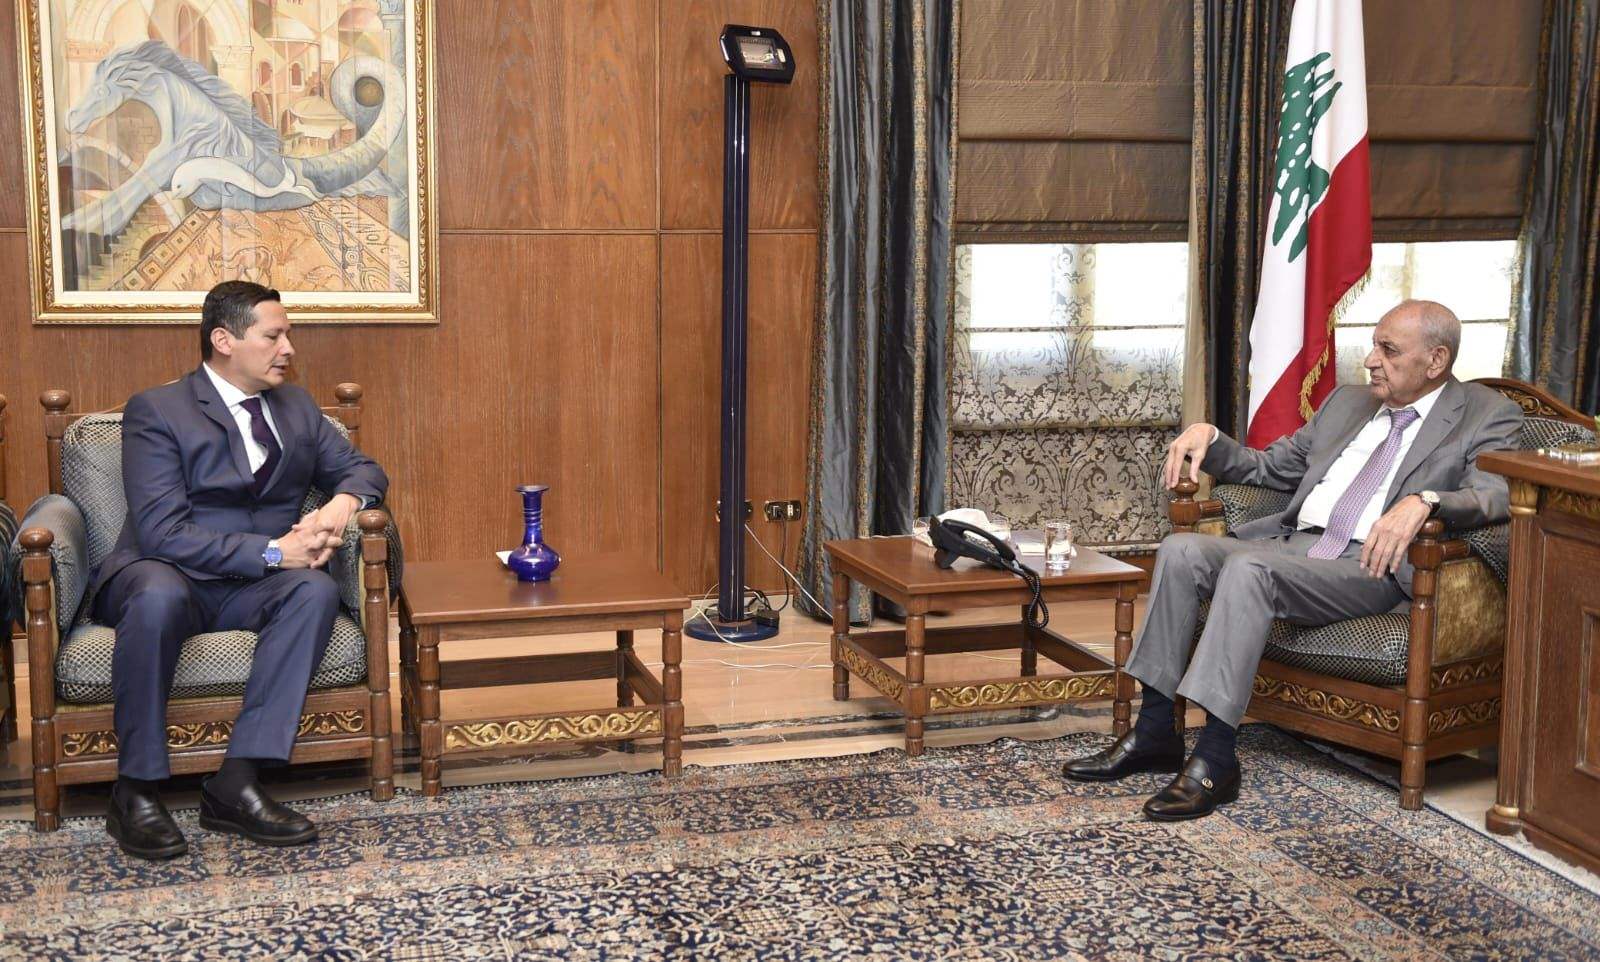 بري استقبل سفيرة قبرص في زيارة برتوكولية والتقى سفير كولومبيا وأبرق لنظيره المغربي معزياً بضحايا الزلزال